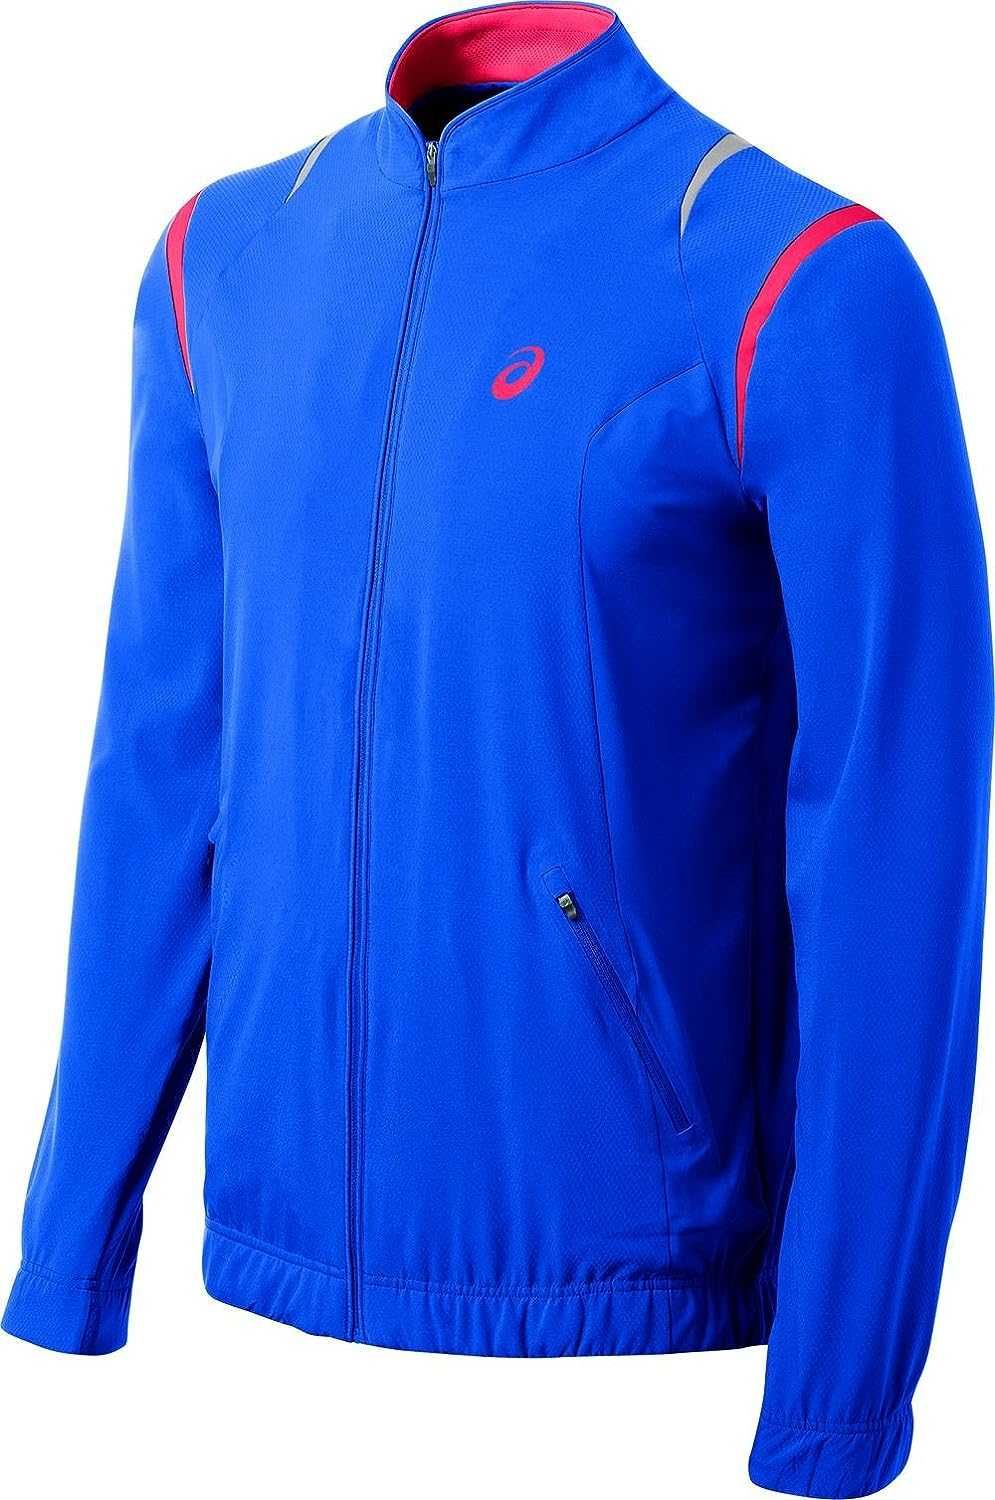 Чоловіча бігова куртка, вітровка Asics M'S Resolution Speed Blue